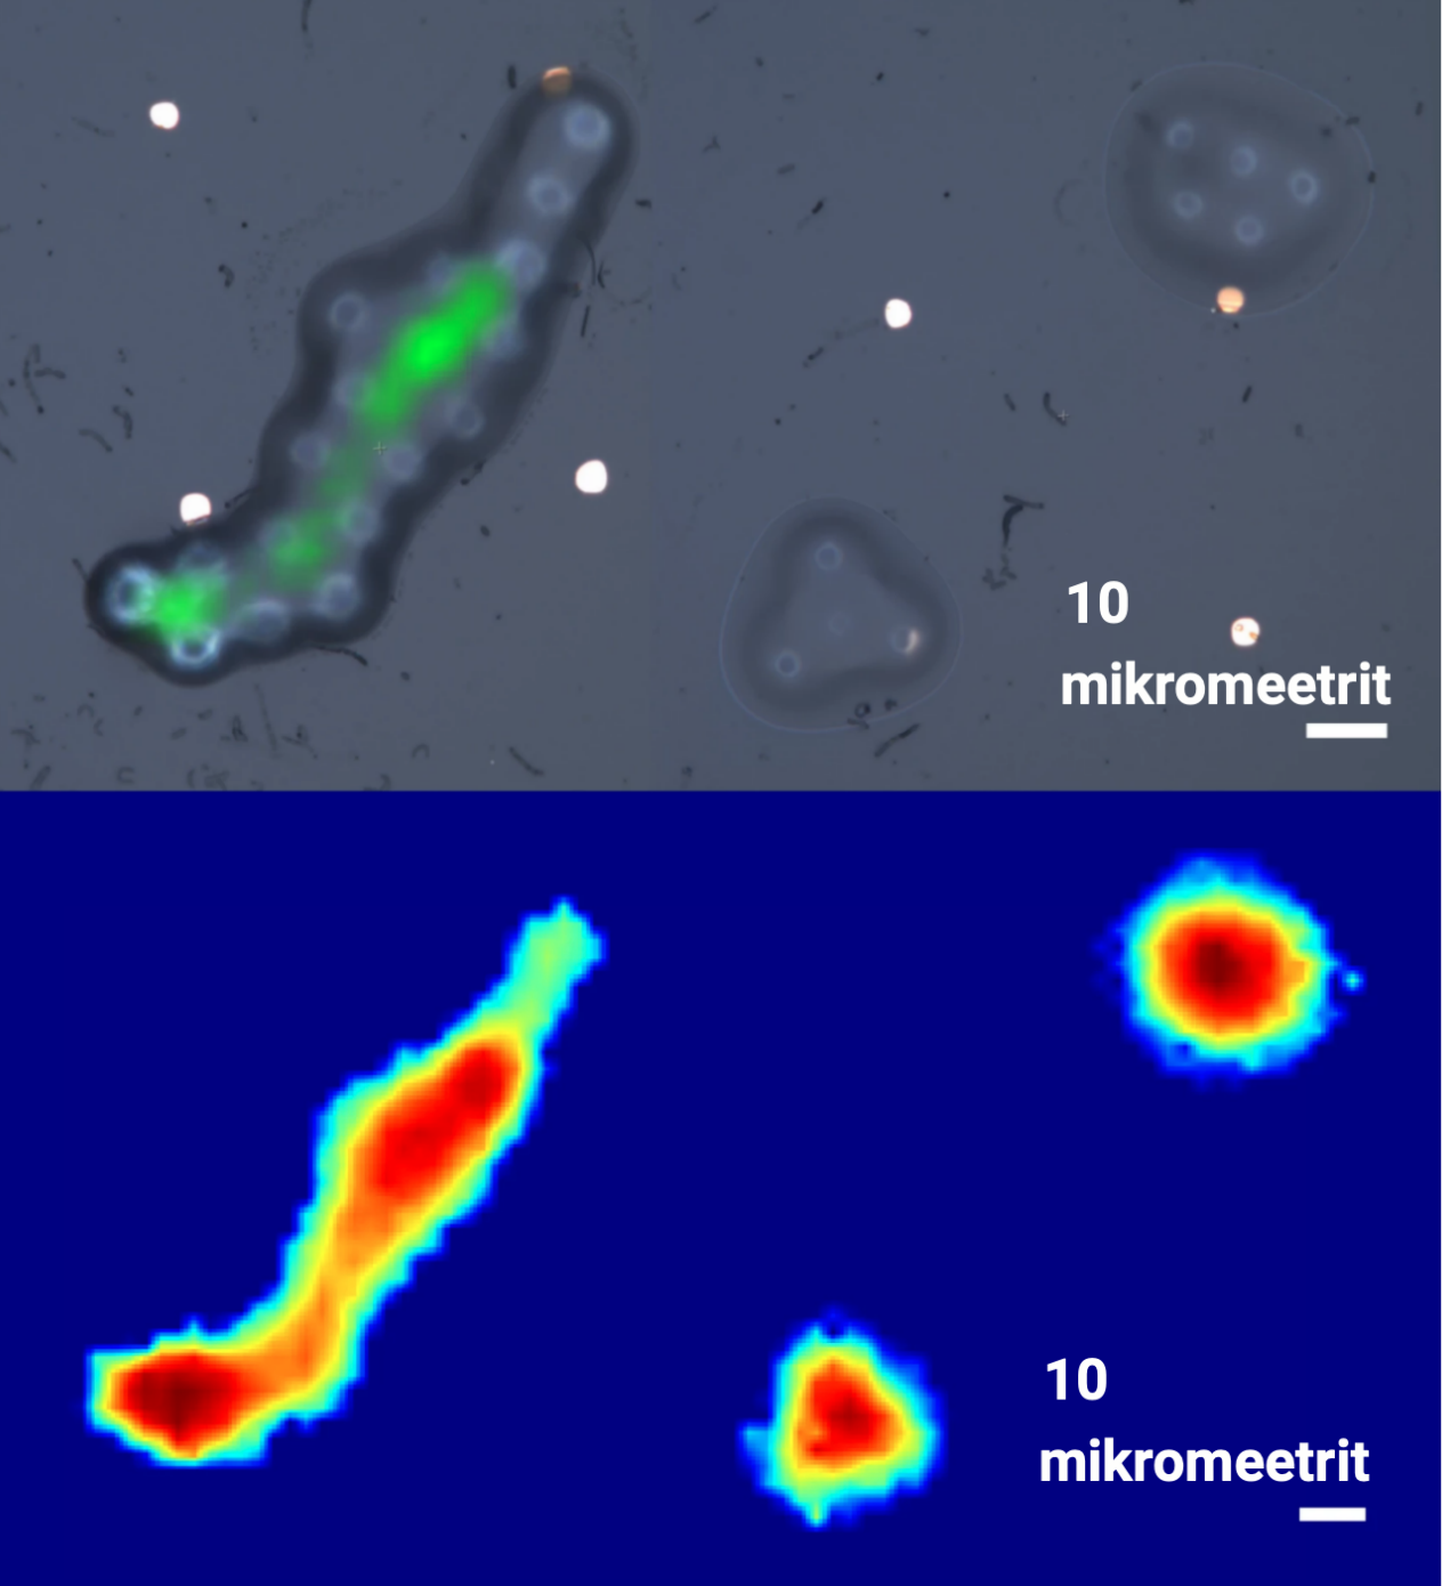 Valgusmikroskoobi abil (ülal) ja foononsonariga kuvatud plastikmaterjalist tehisobjektid. Helilainetega õnnestub vaadelda objekte valgusmikroiskoobiga lähedase lahutusega. 